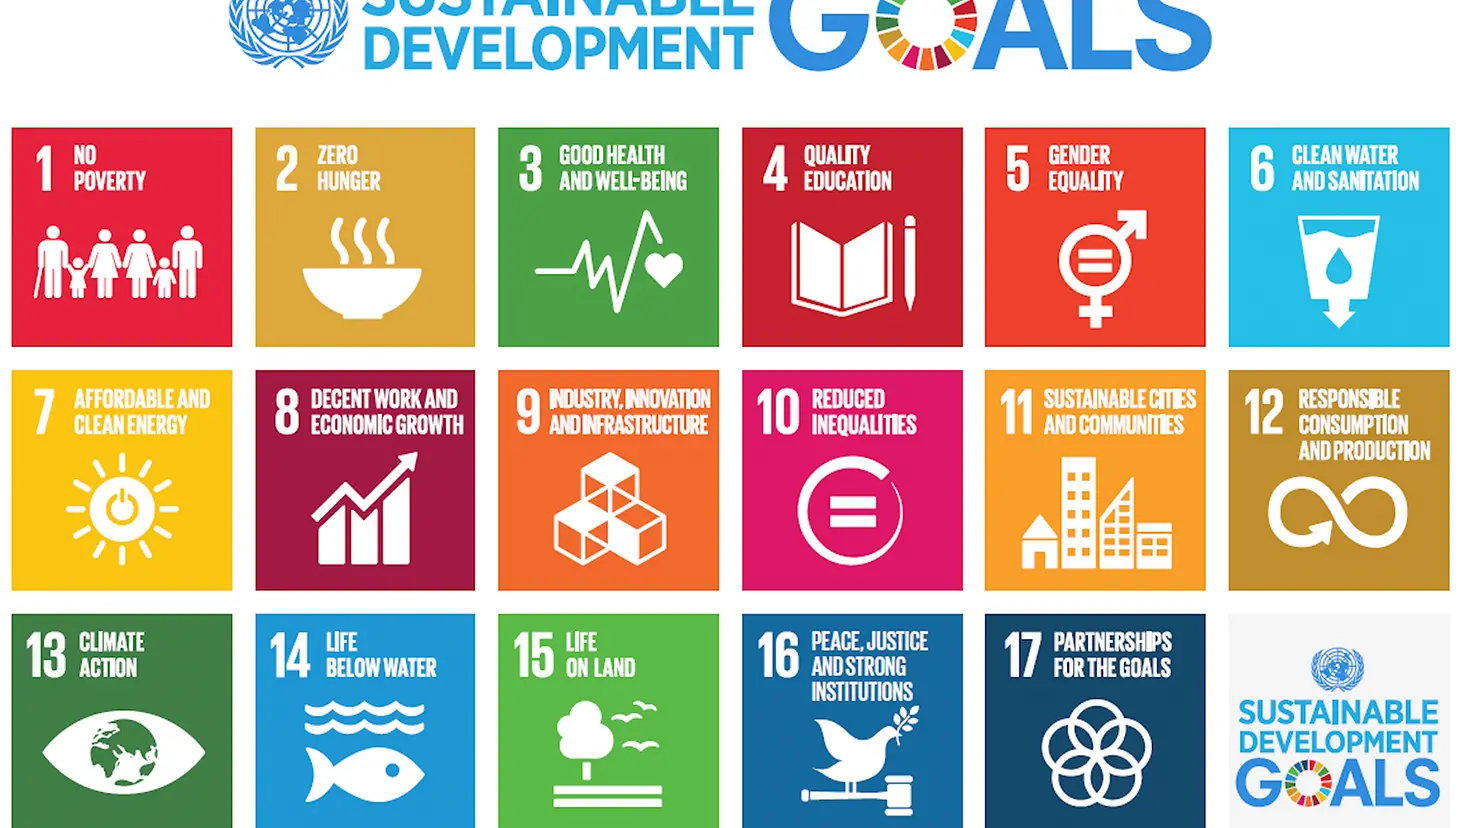 Abbildung der Ziele für nachhaltige Entwicklung der UN